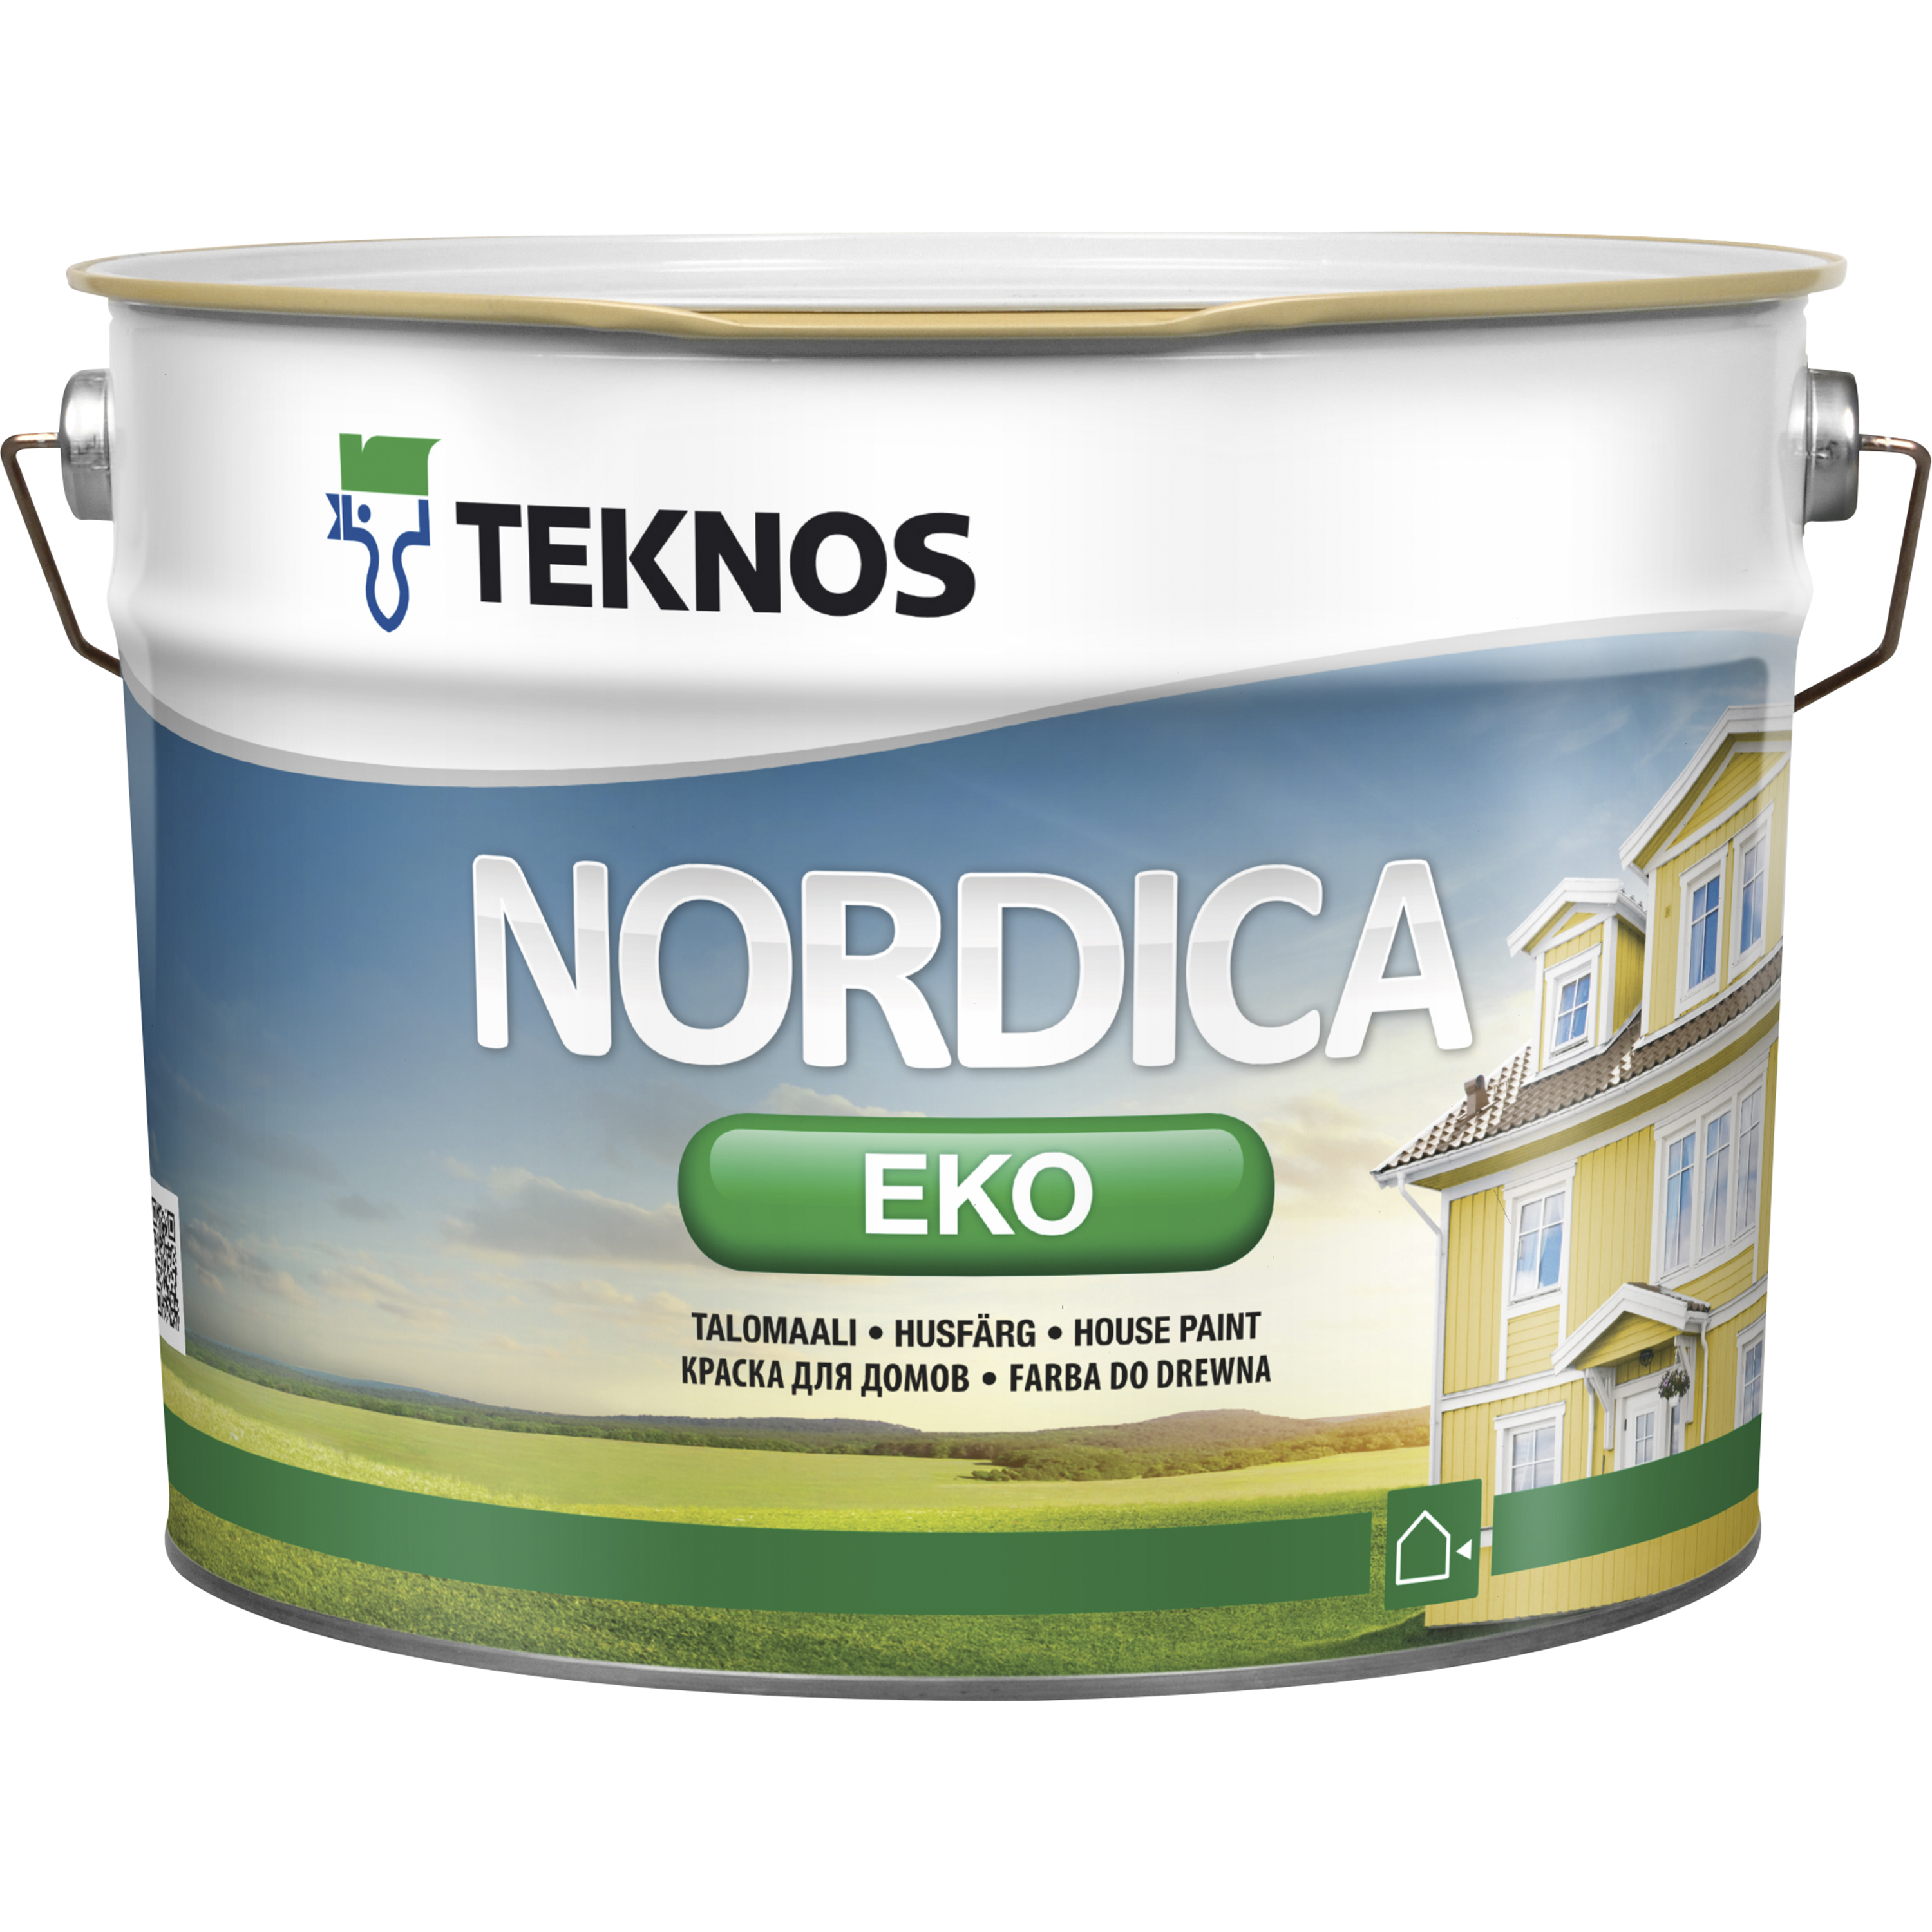 Teknos Husfärg Nordica Eko Bas 1 9 l